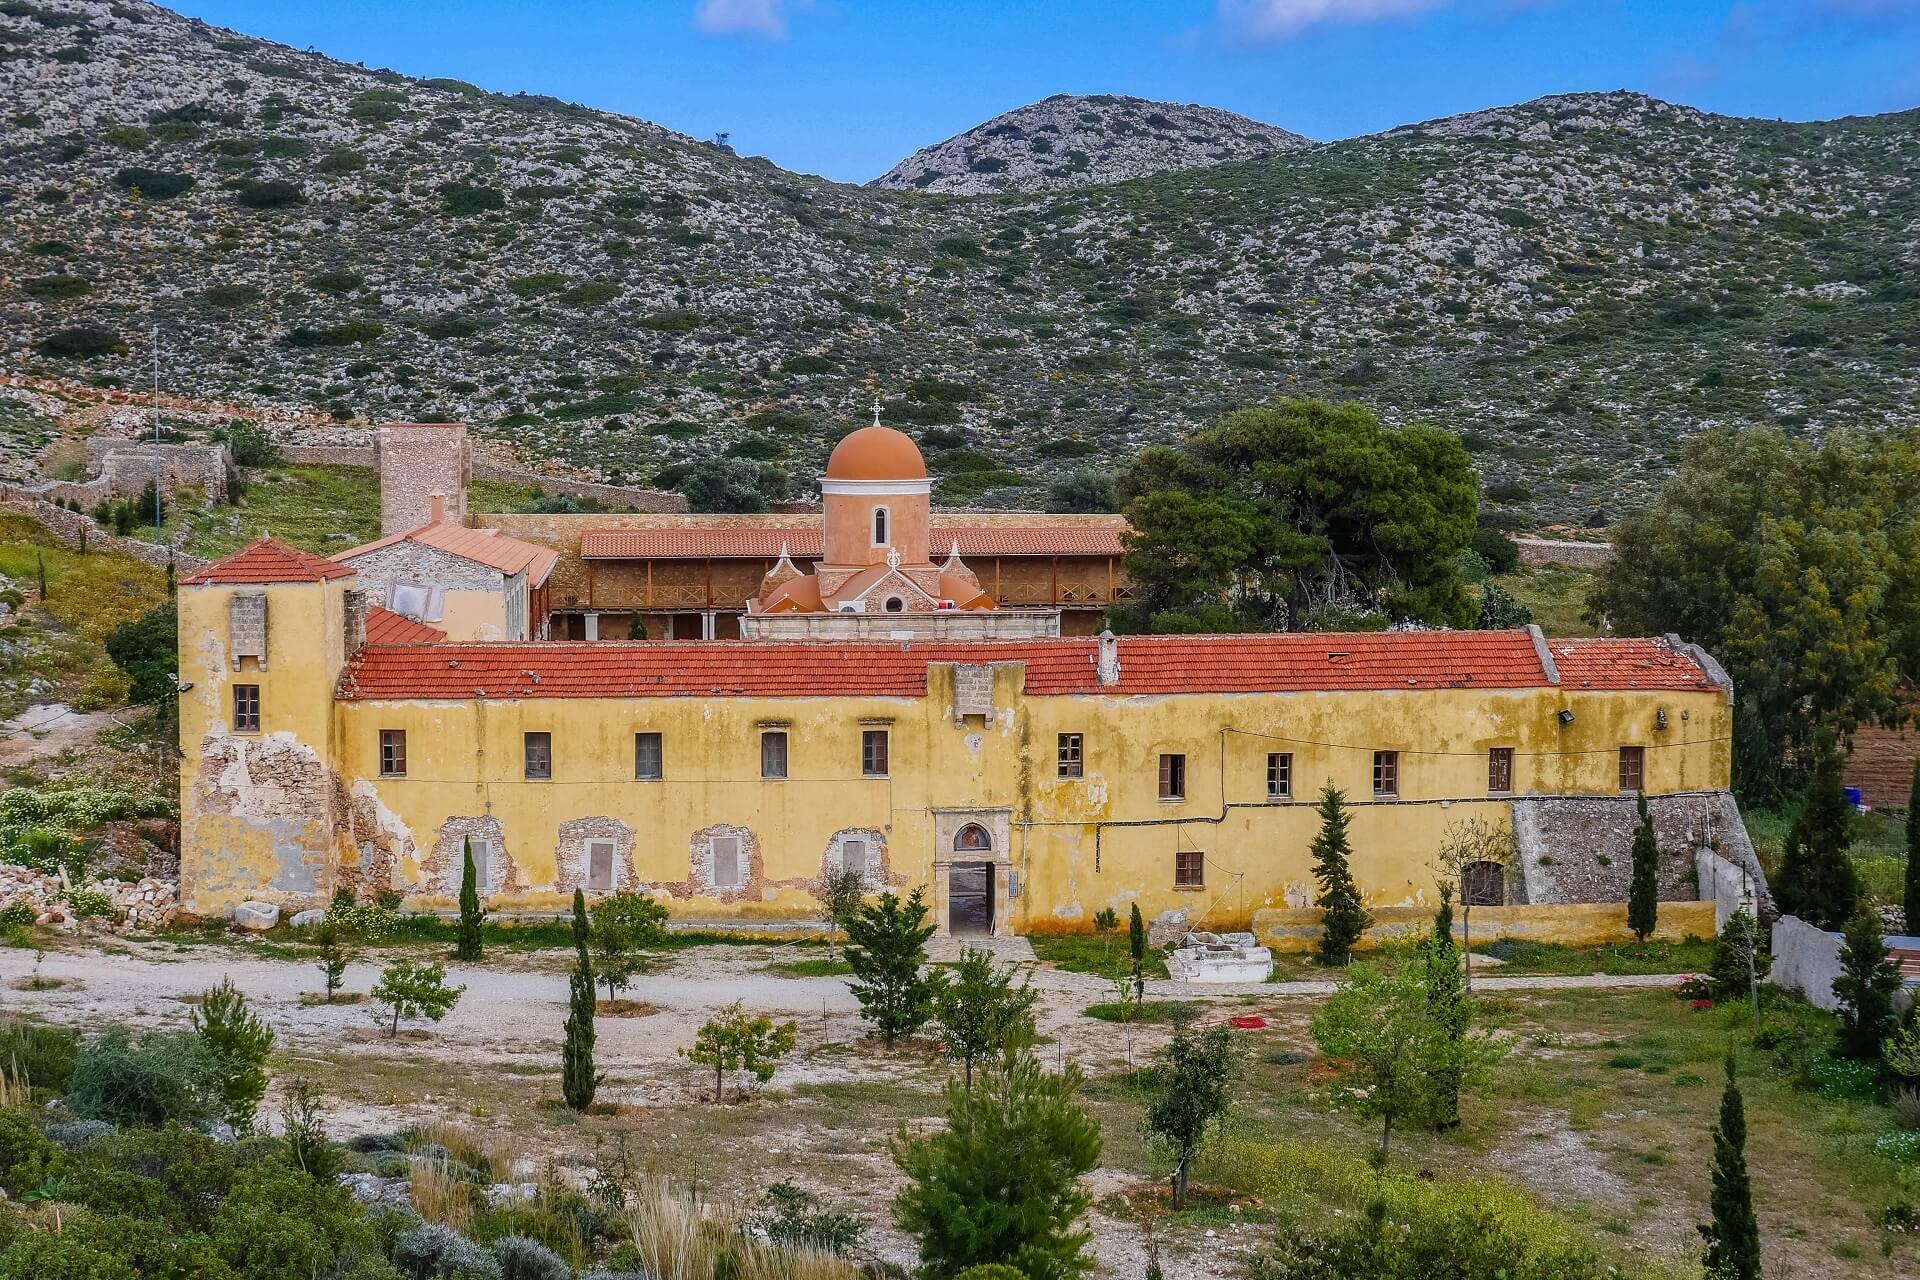 Gouverneto Monastery Chania Crete - allincrete.com